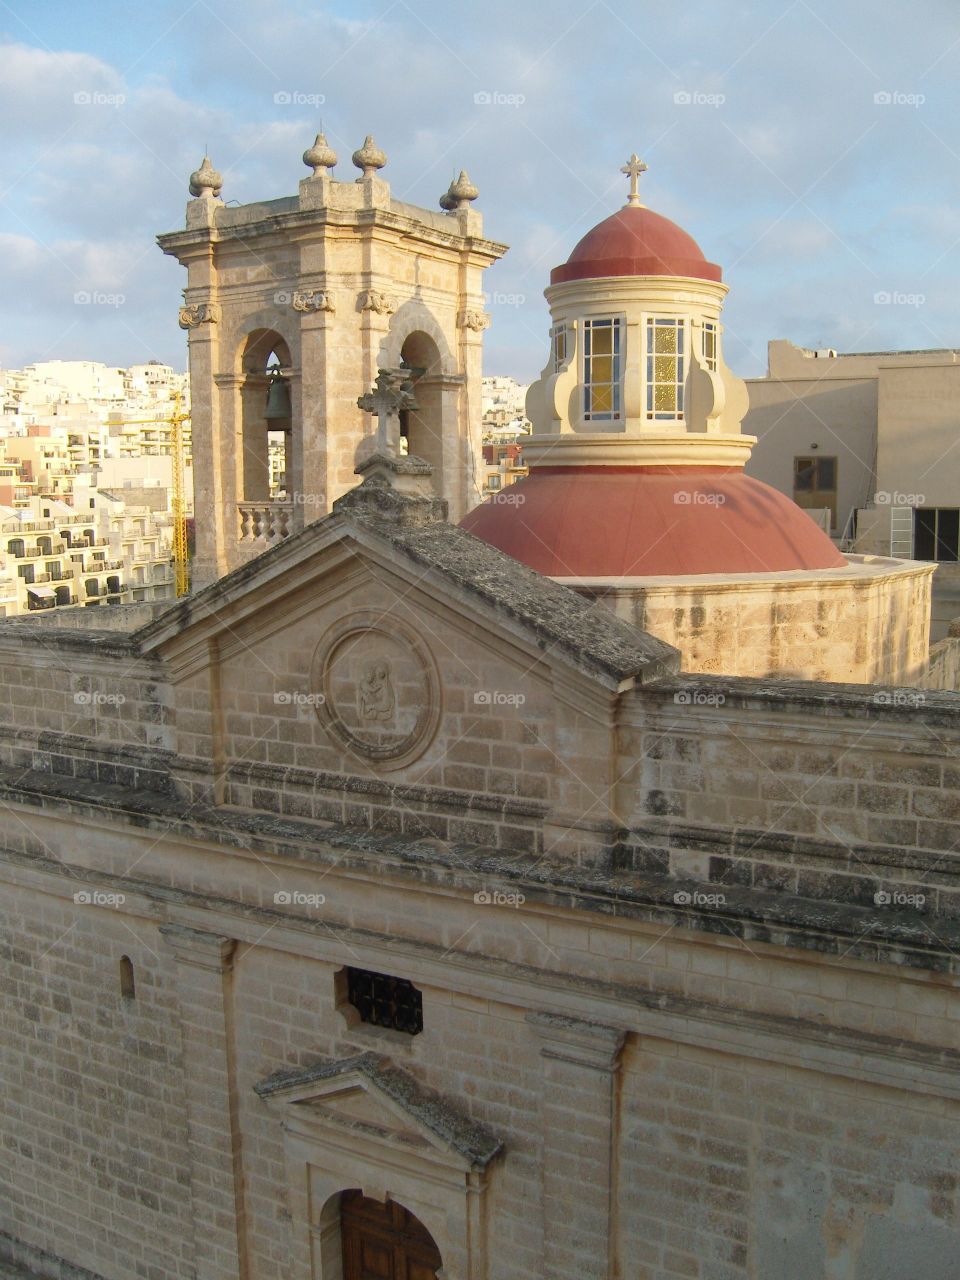 Malta churches Red dome